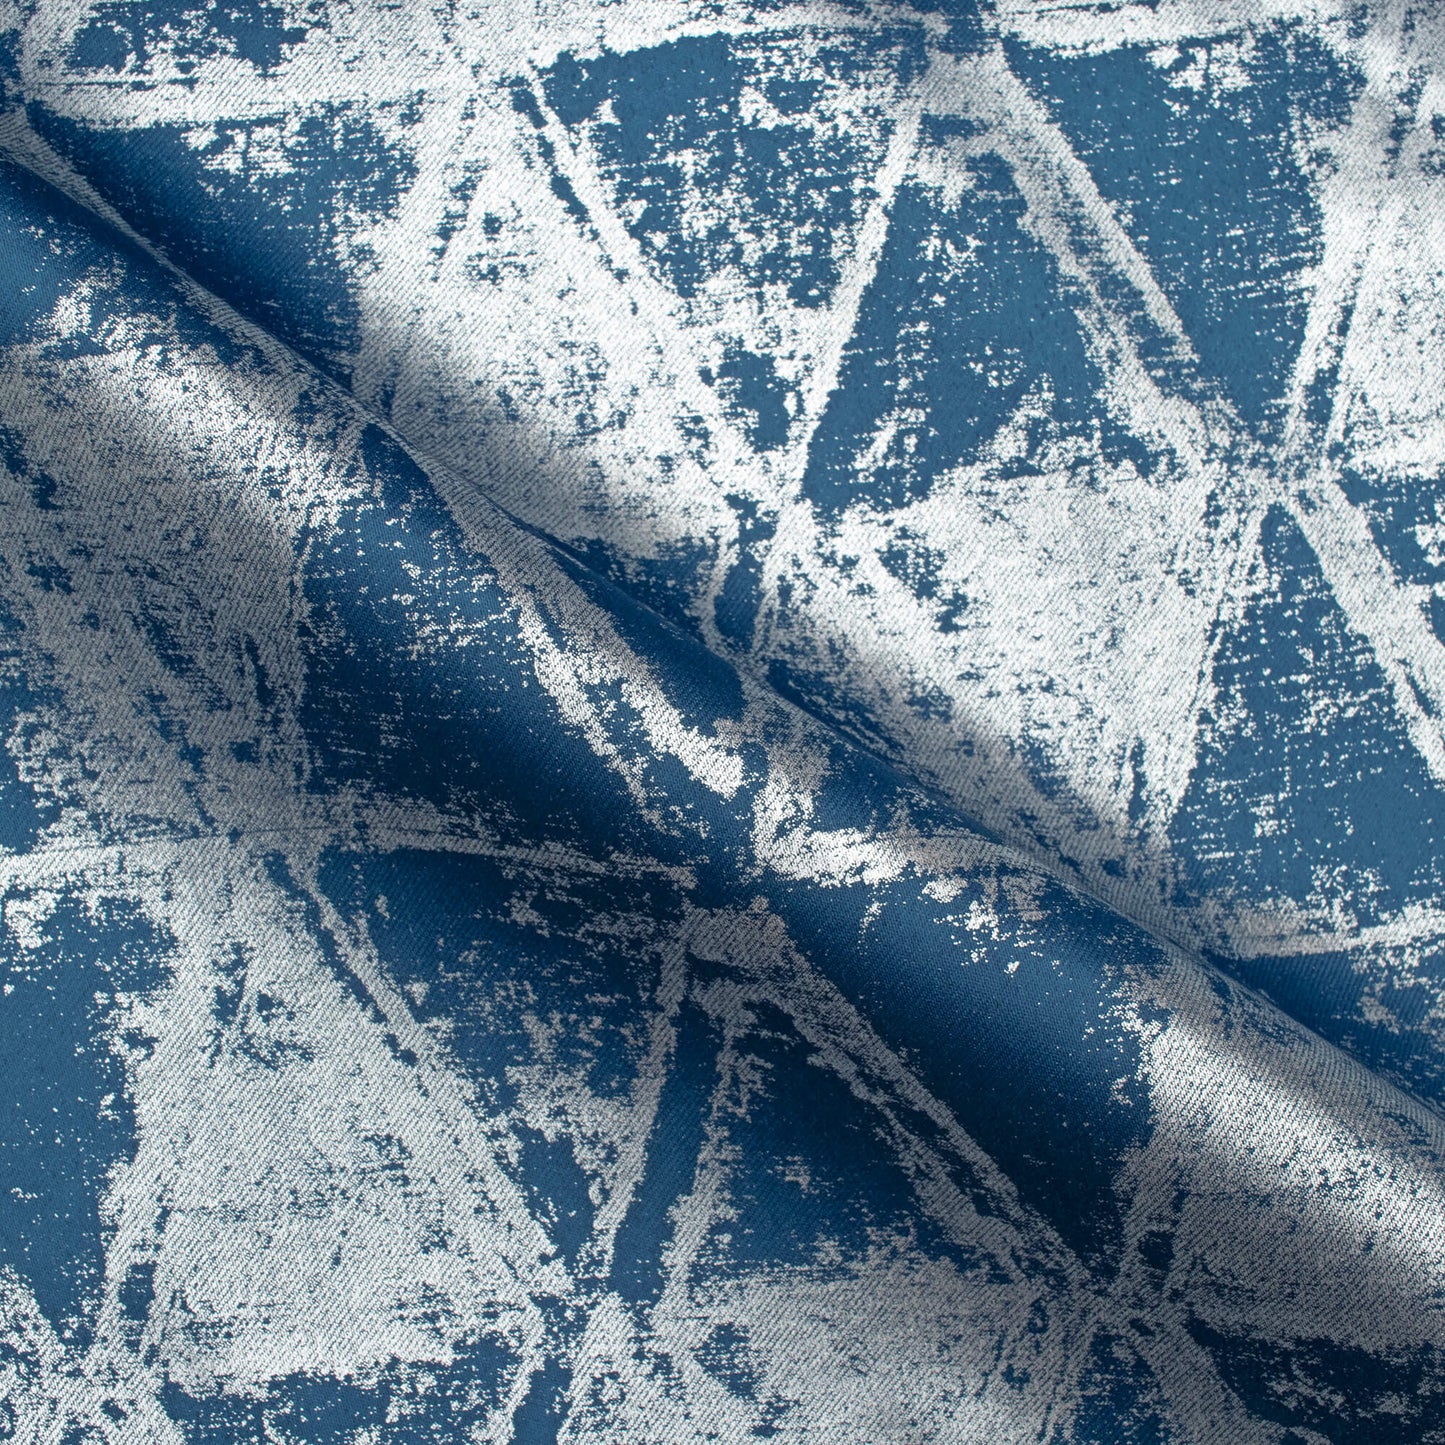 Regal Blue Geometric Pattern Silver Foil Premium Curtain Fabric (Width 54 Inches)